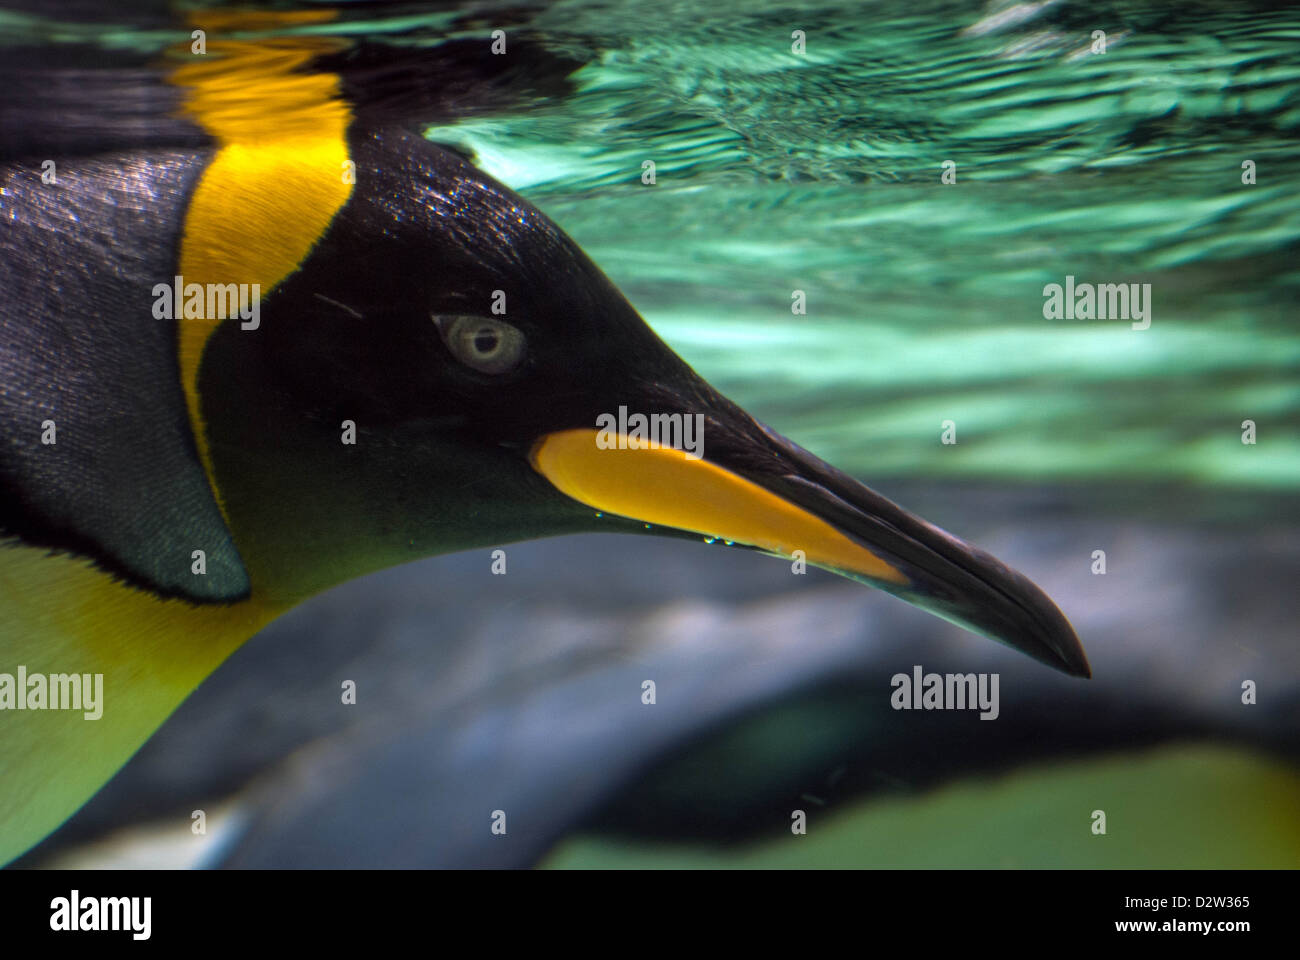 Eine Nahaufnahme Profil Unterwasser schoss der Königspinguin Kopf mit feinen Details des Auges, Schnabel und bunten Gefieder Stockfoto